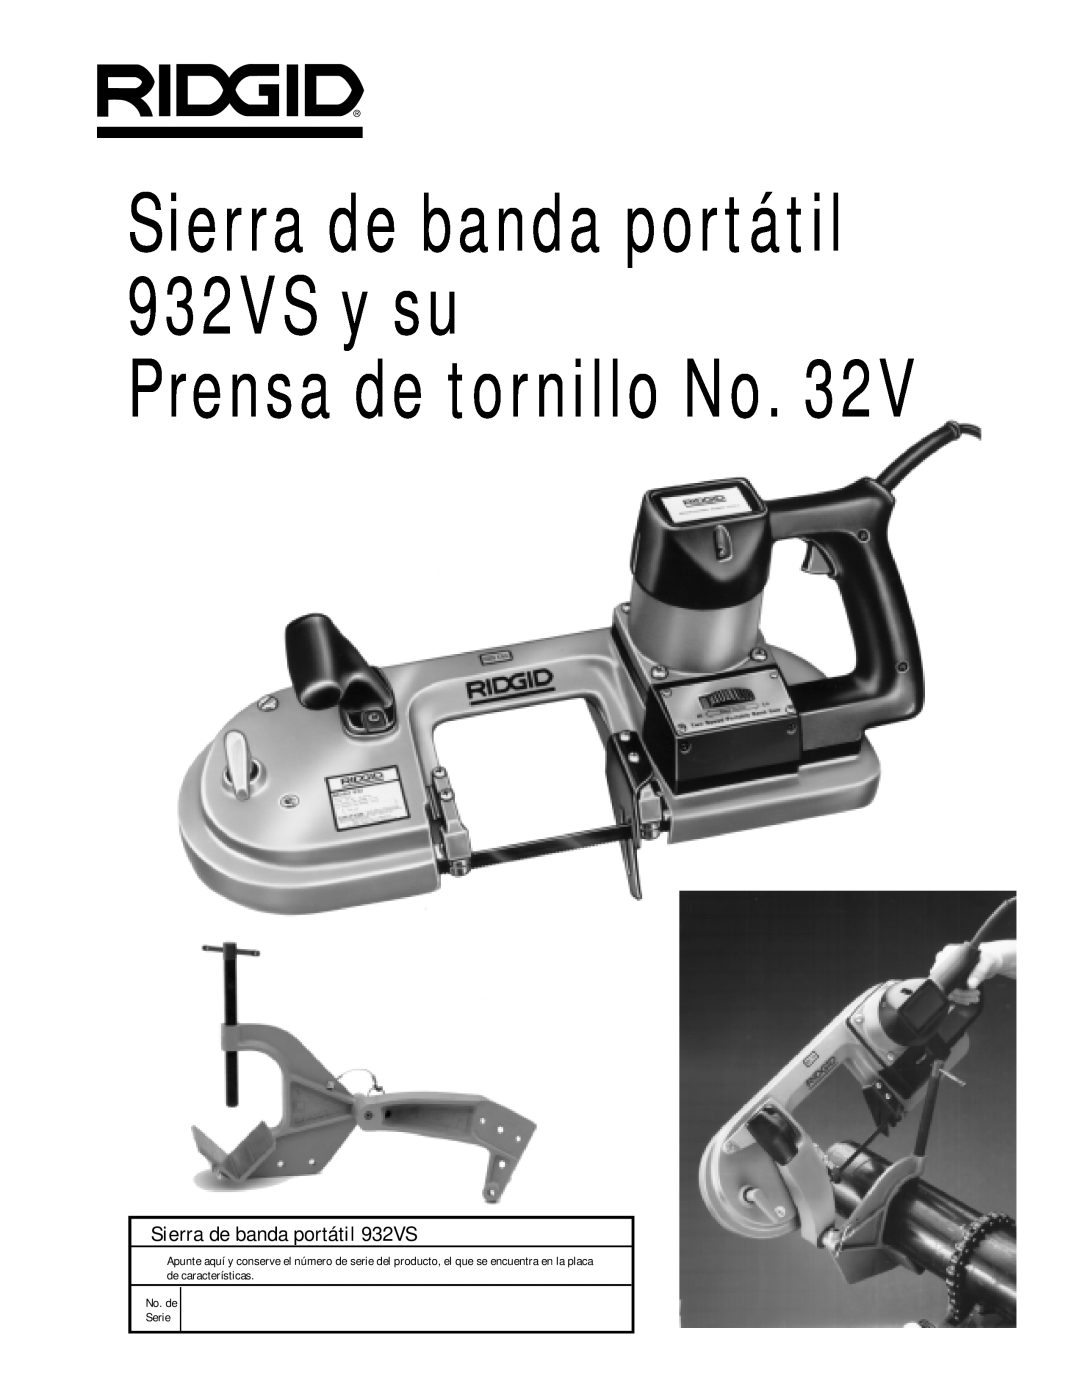 RIDGID manual Sierra de banda portátil 932VS y su, Prensa de tornillo No, No. de Serie 